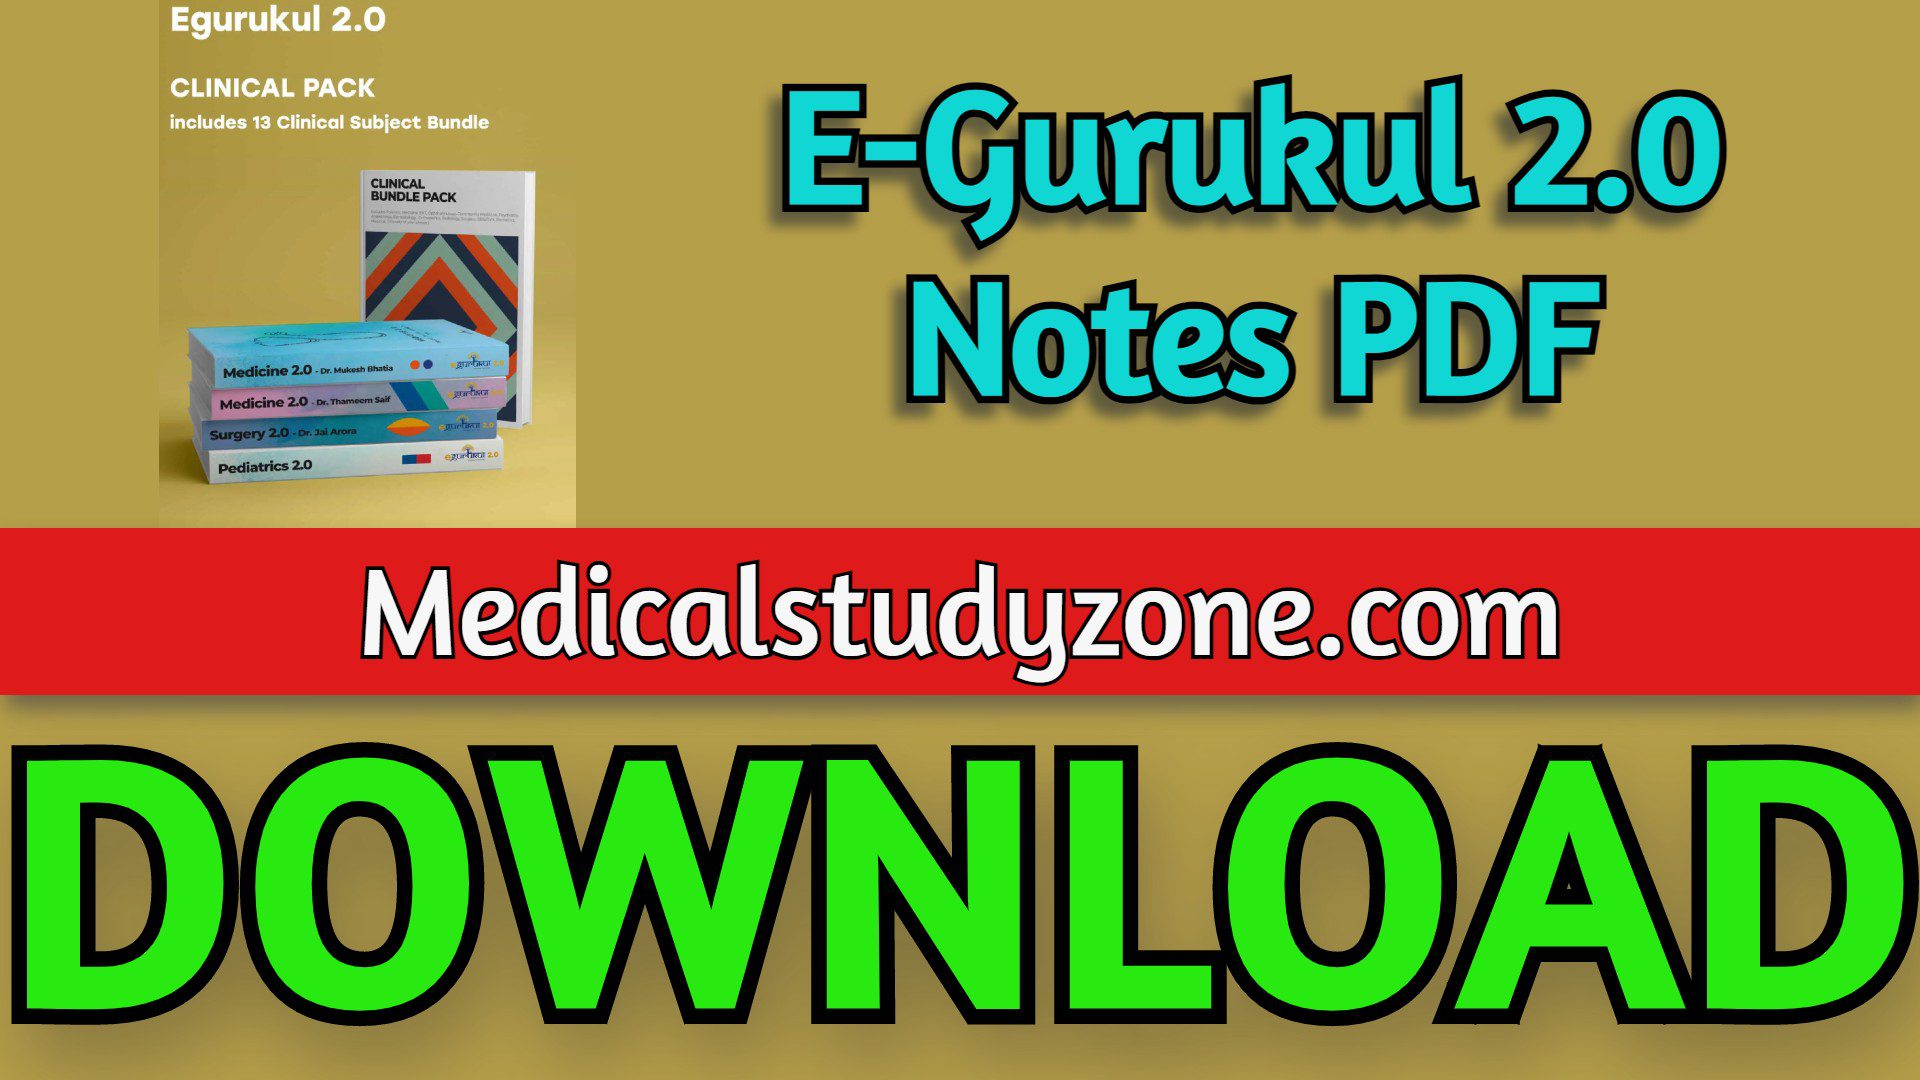 E-Gurukul 2.0 Notes PDF 2022 Free Download